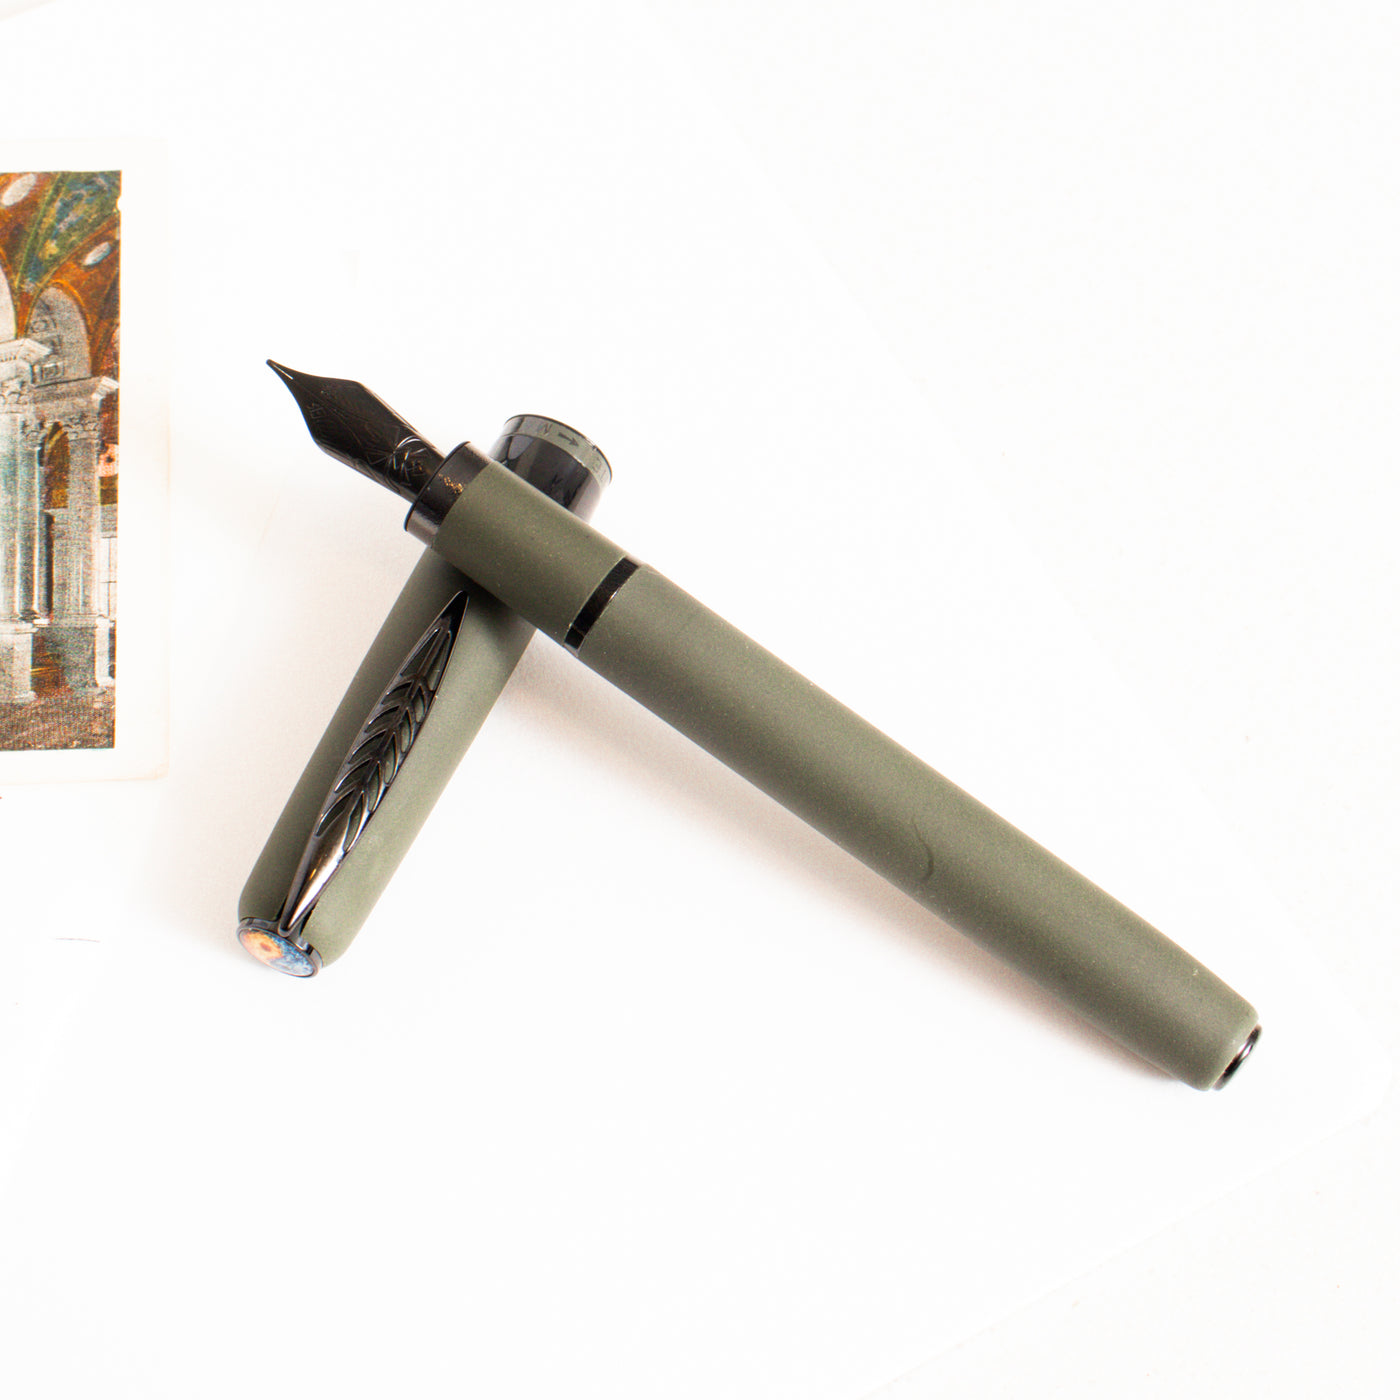 Pineider Alchemist Krakatoa Green Fountain Pen - Stainless Steel Nib